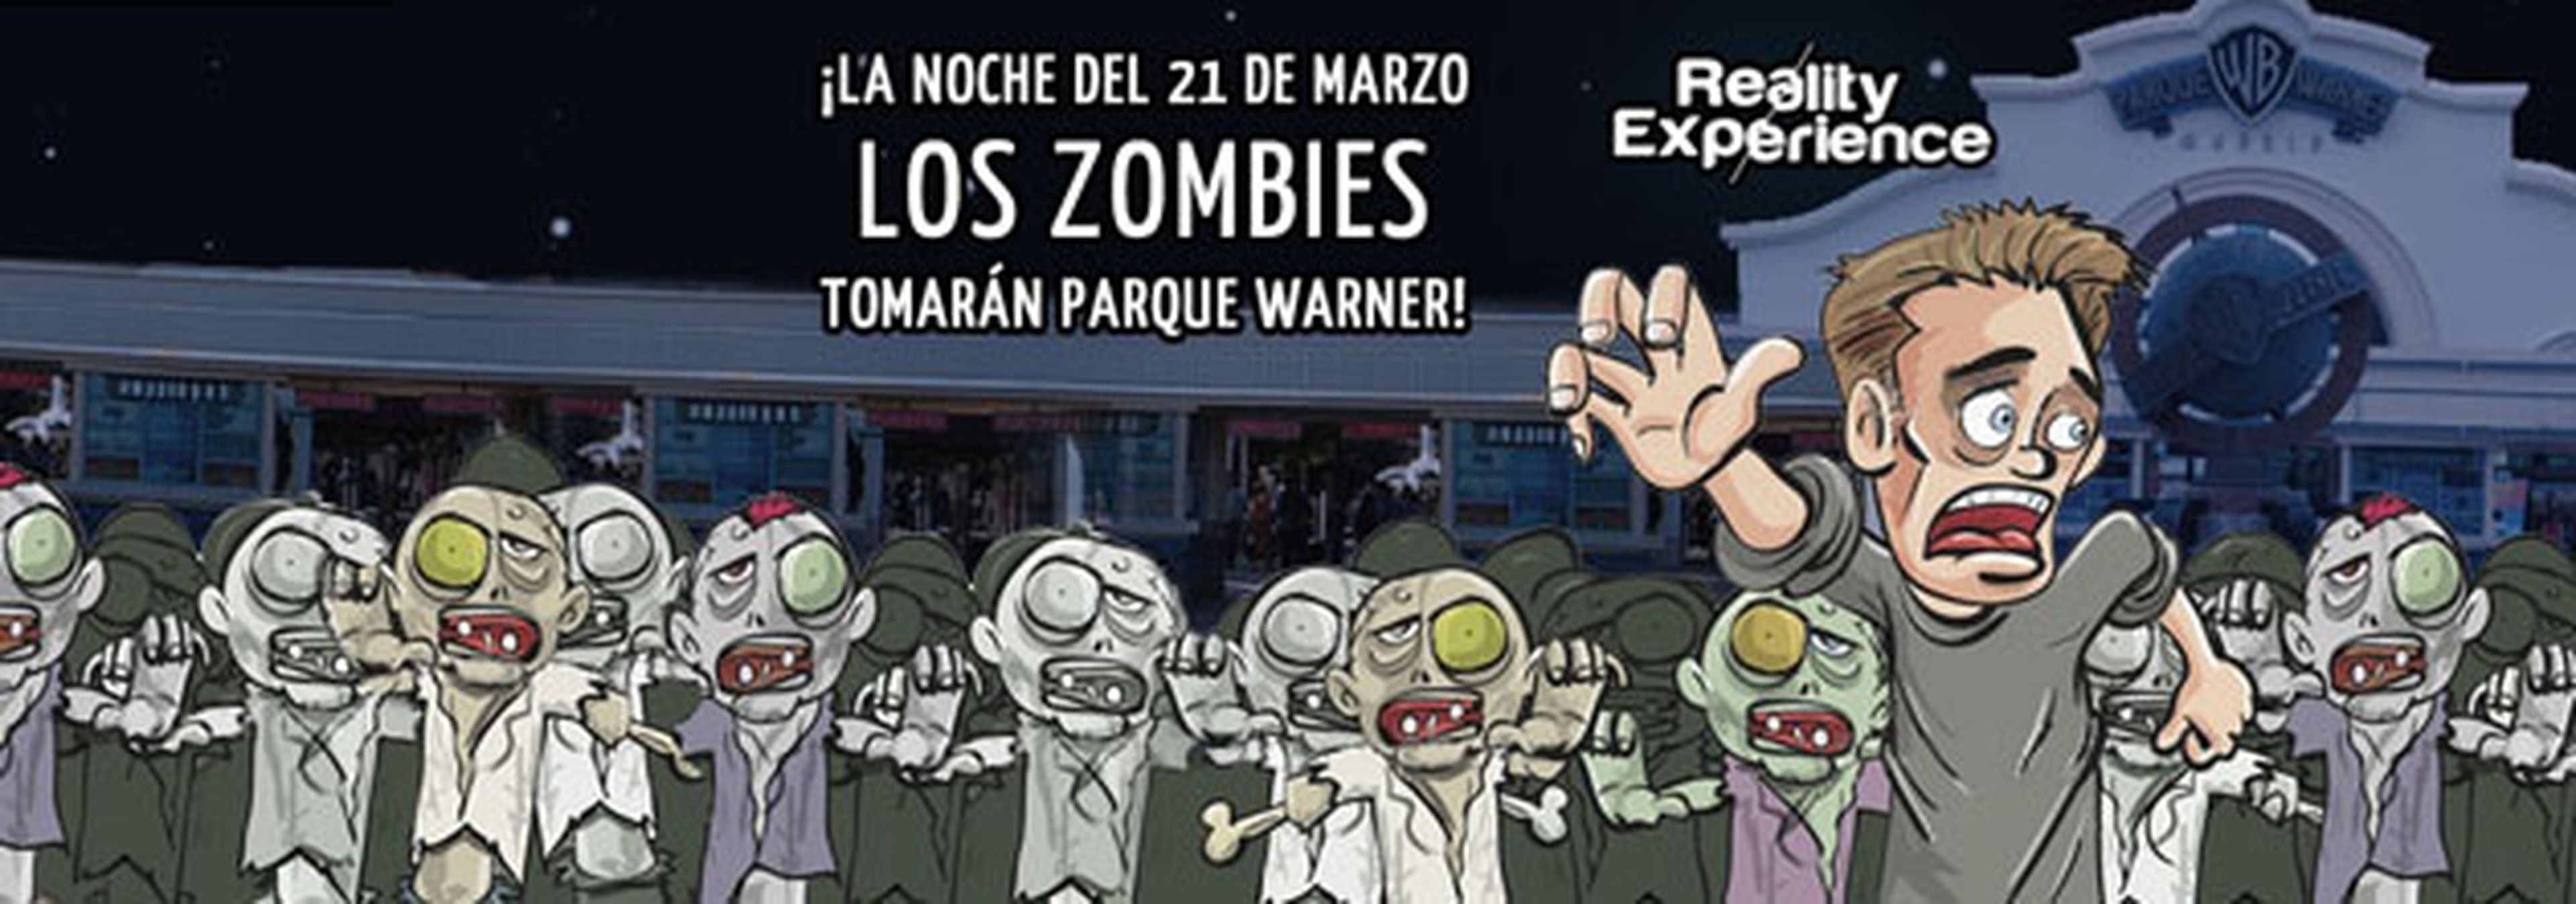 I Zombie Edition en el Parque Warner